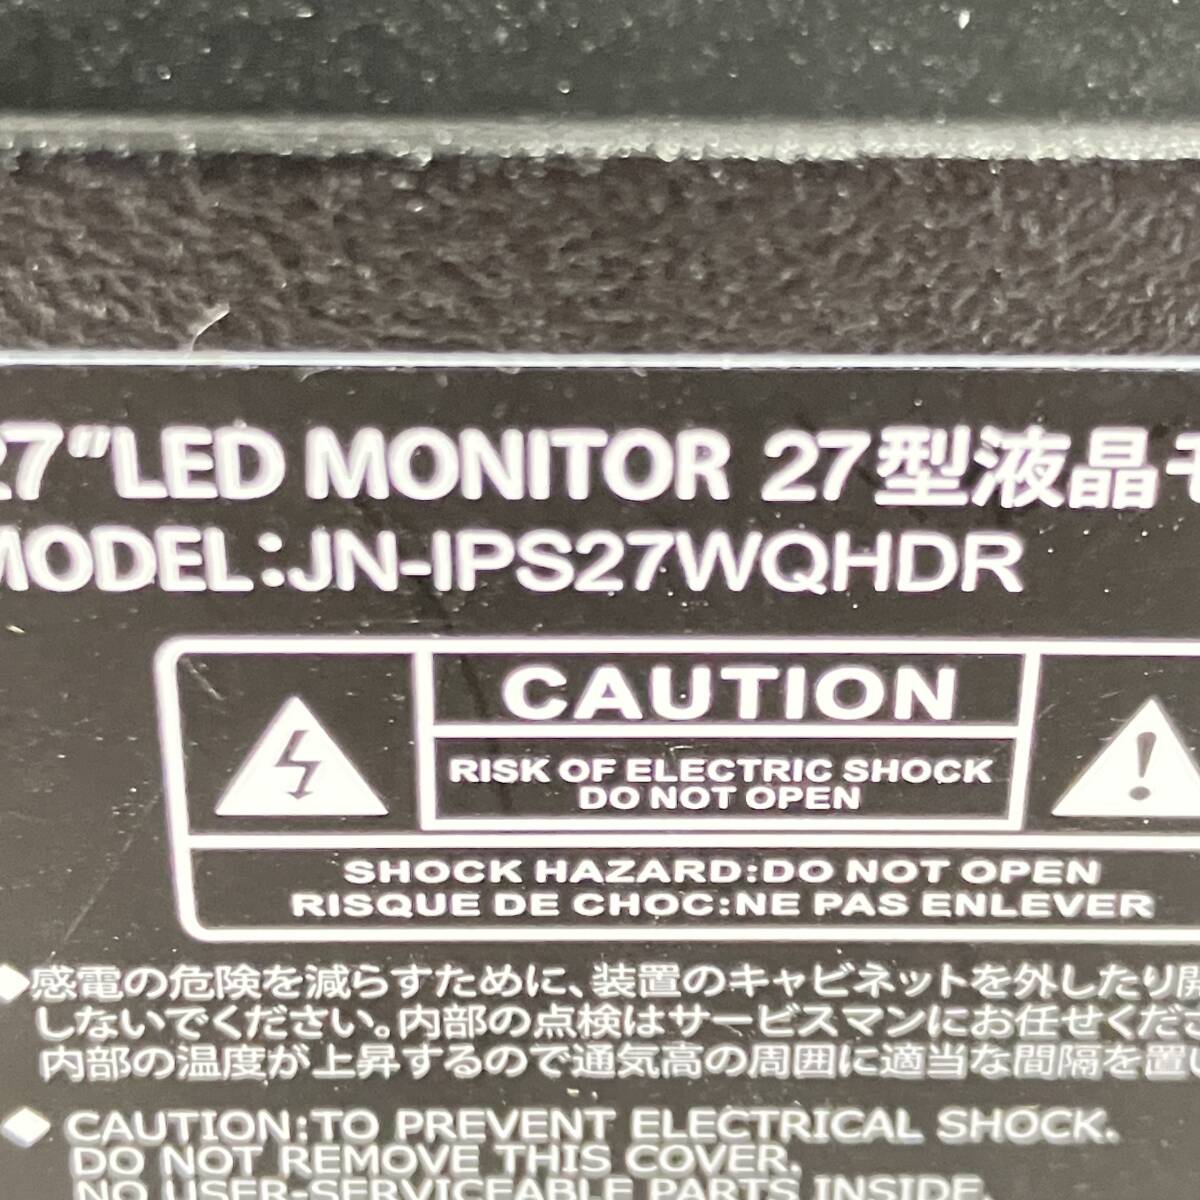 *1 иен ~*JAPANNEXT*27 дюймовый жидкокристаллический монитор *JN-IPS27WQHDR* шнур электропитания, адаптер,HDMI кабель приложен * подставка нет *